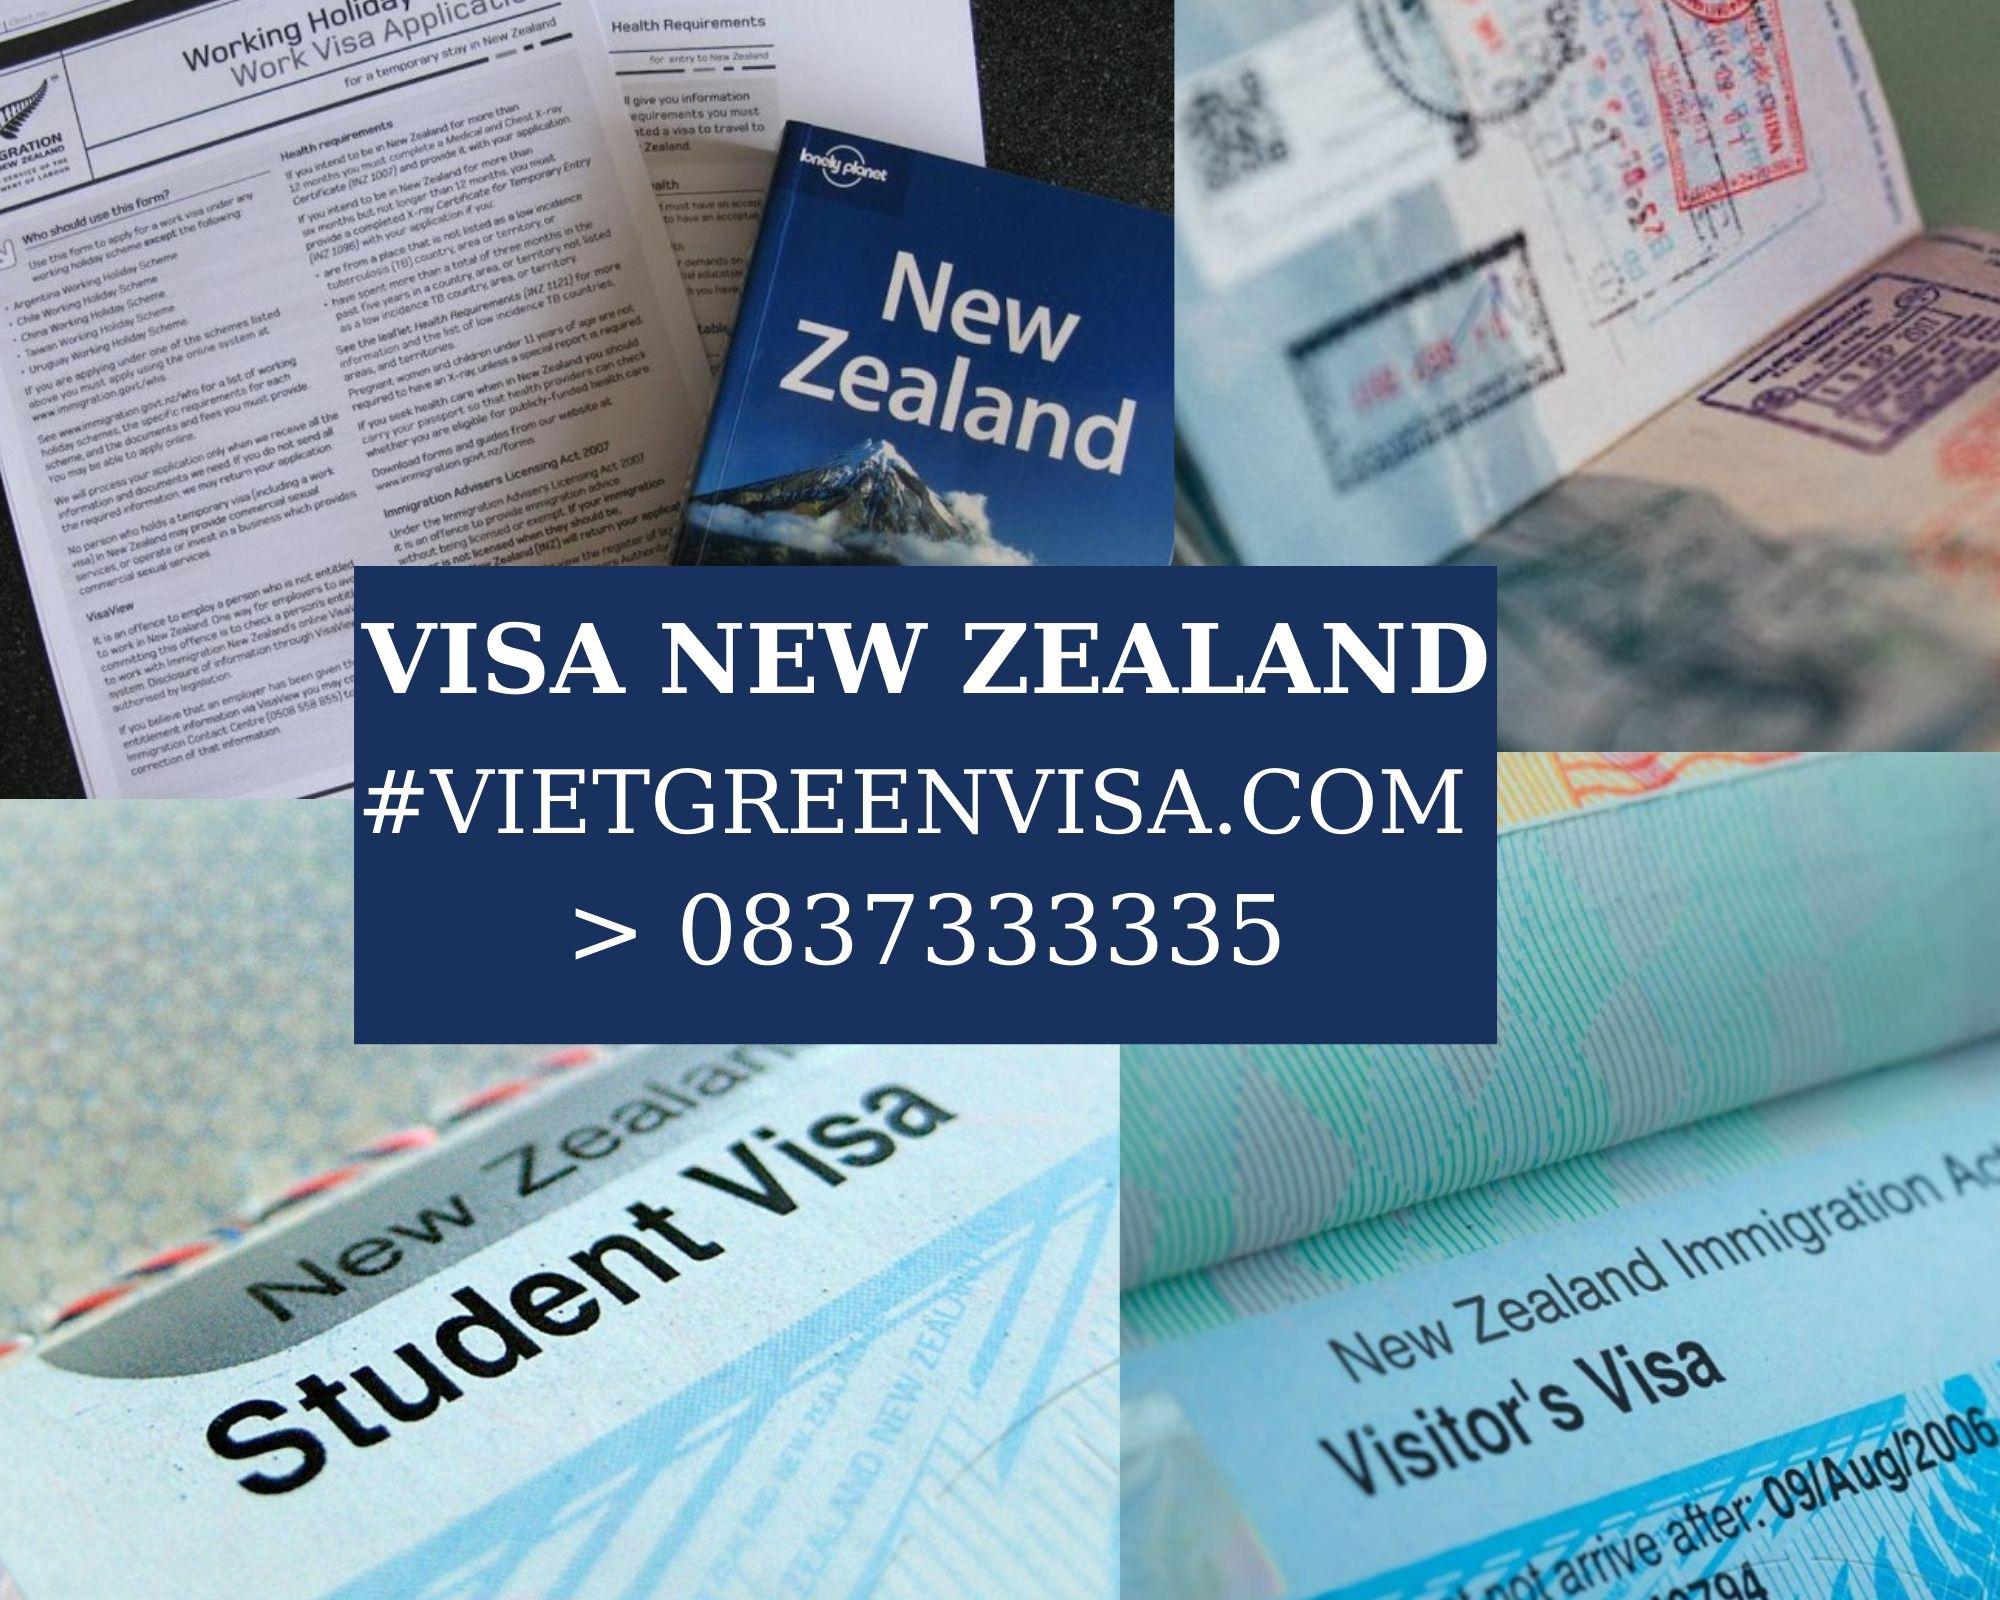 Dịch vụ Làm Visa thuyền viên đi New Zealand Nhận tàu, Lái tàu